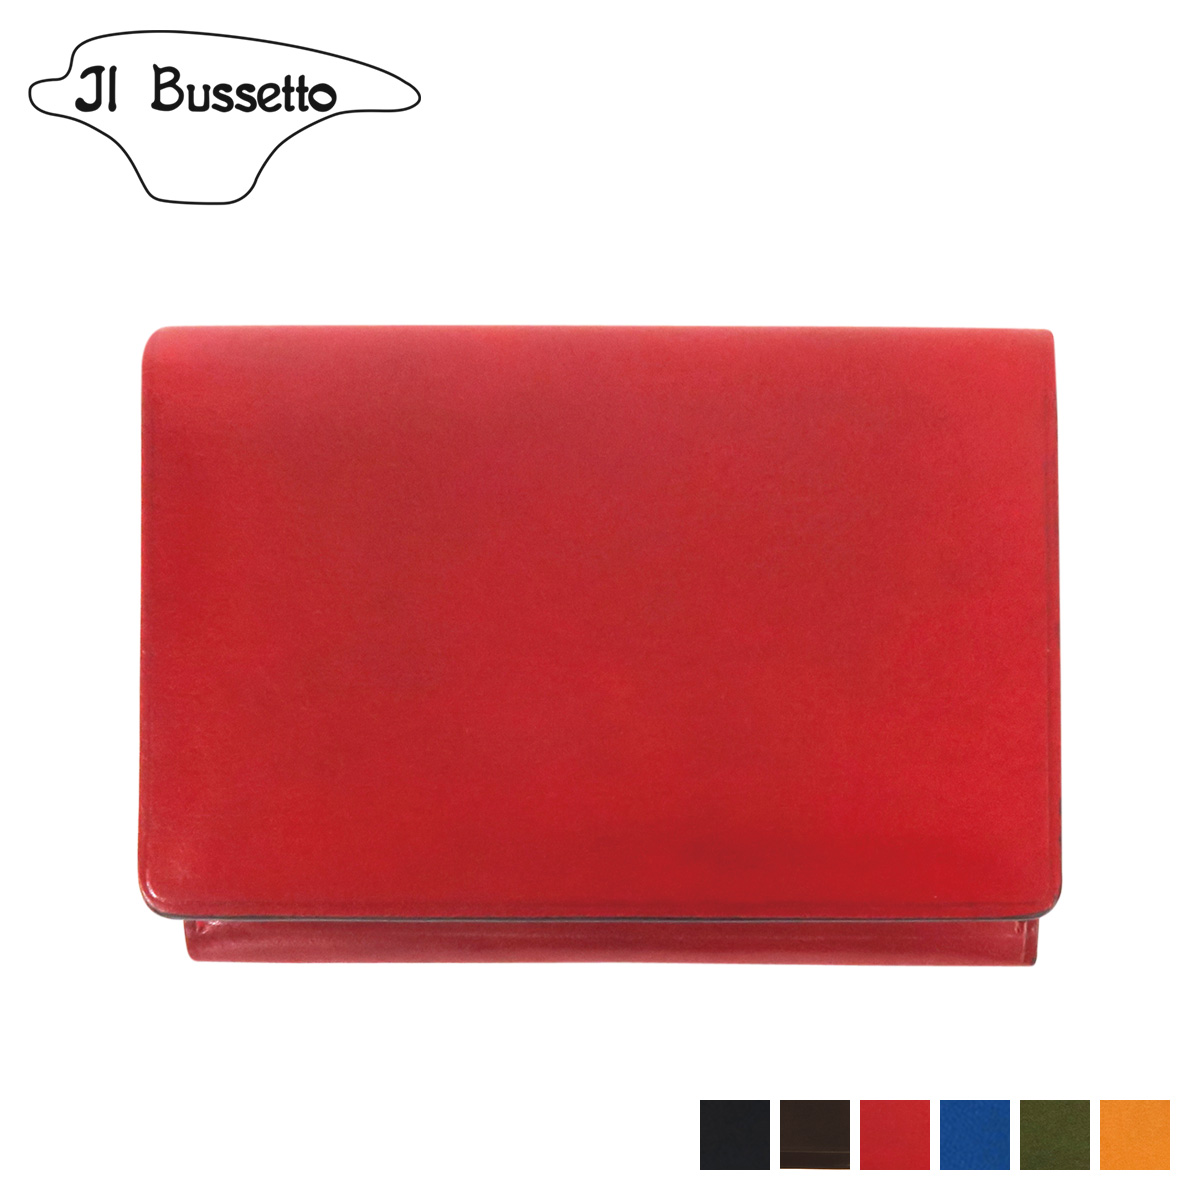 Il Bussetto CARD CASE イルブセット 名刺入れ カードケース パスケース メンズ レディース 本革 ブラック ダーク ブラウン レッド ブルー グリーン イエロー 黒 781522